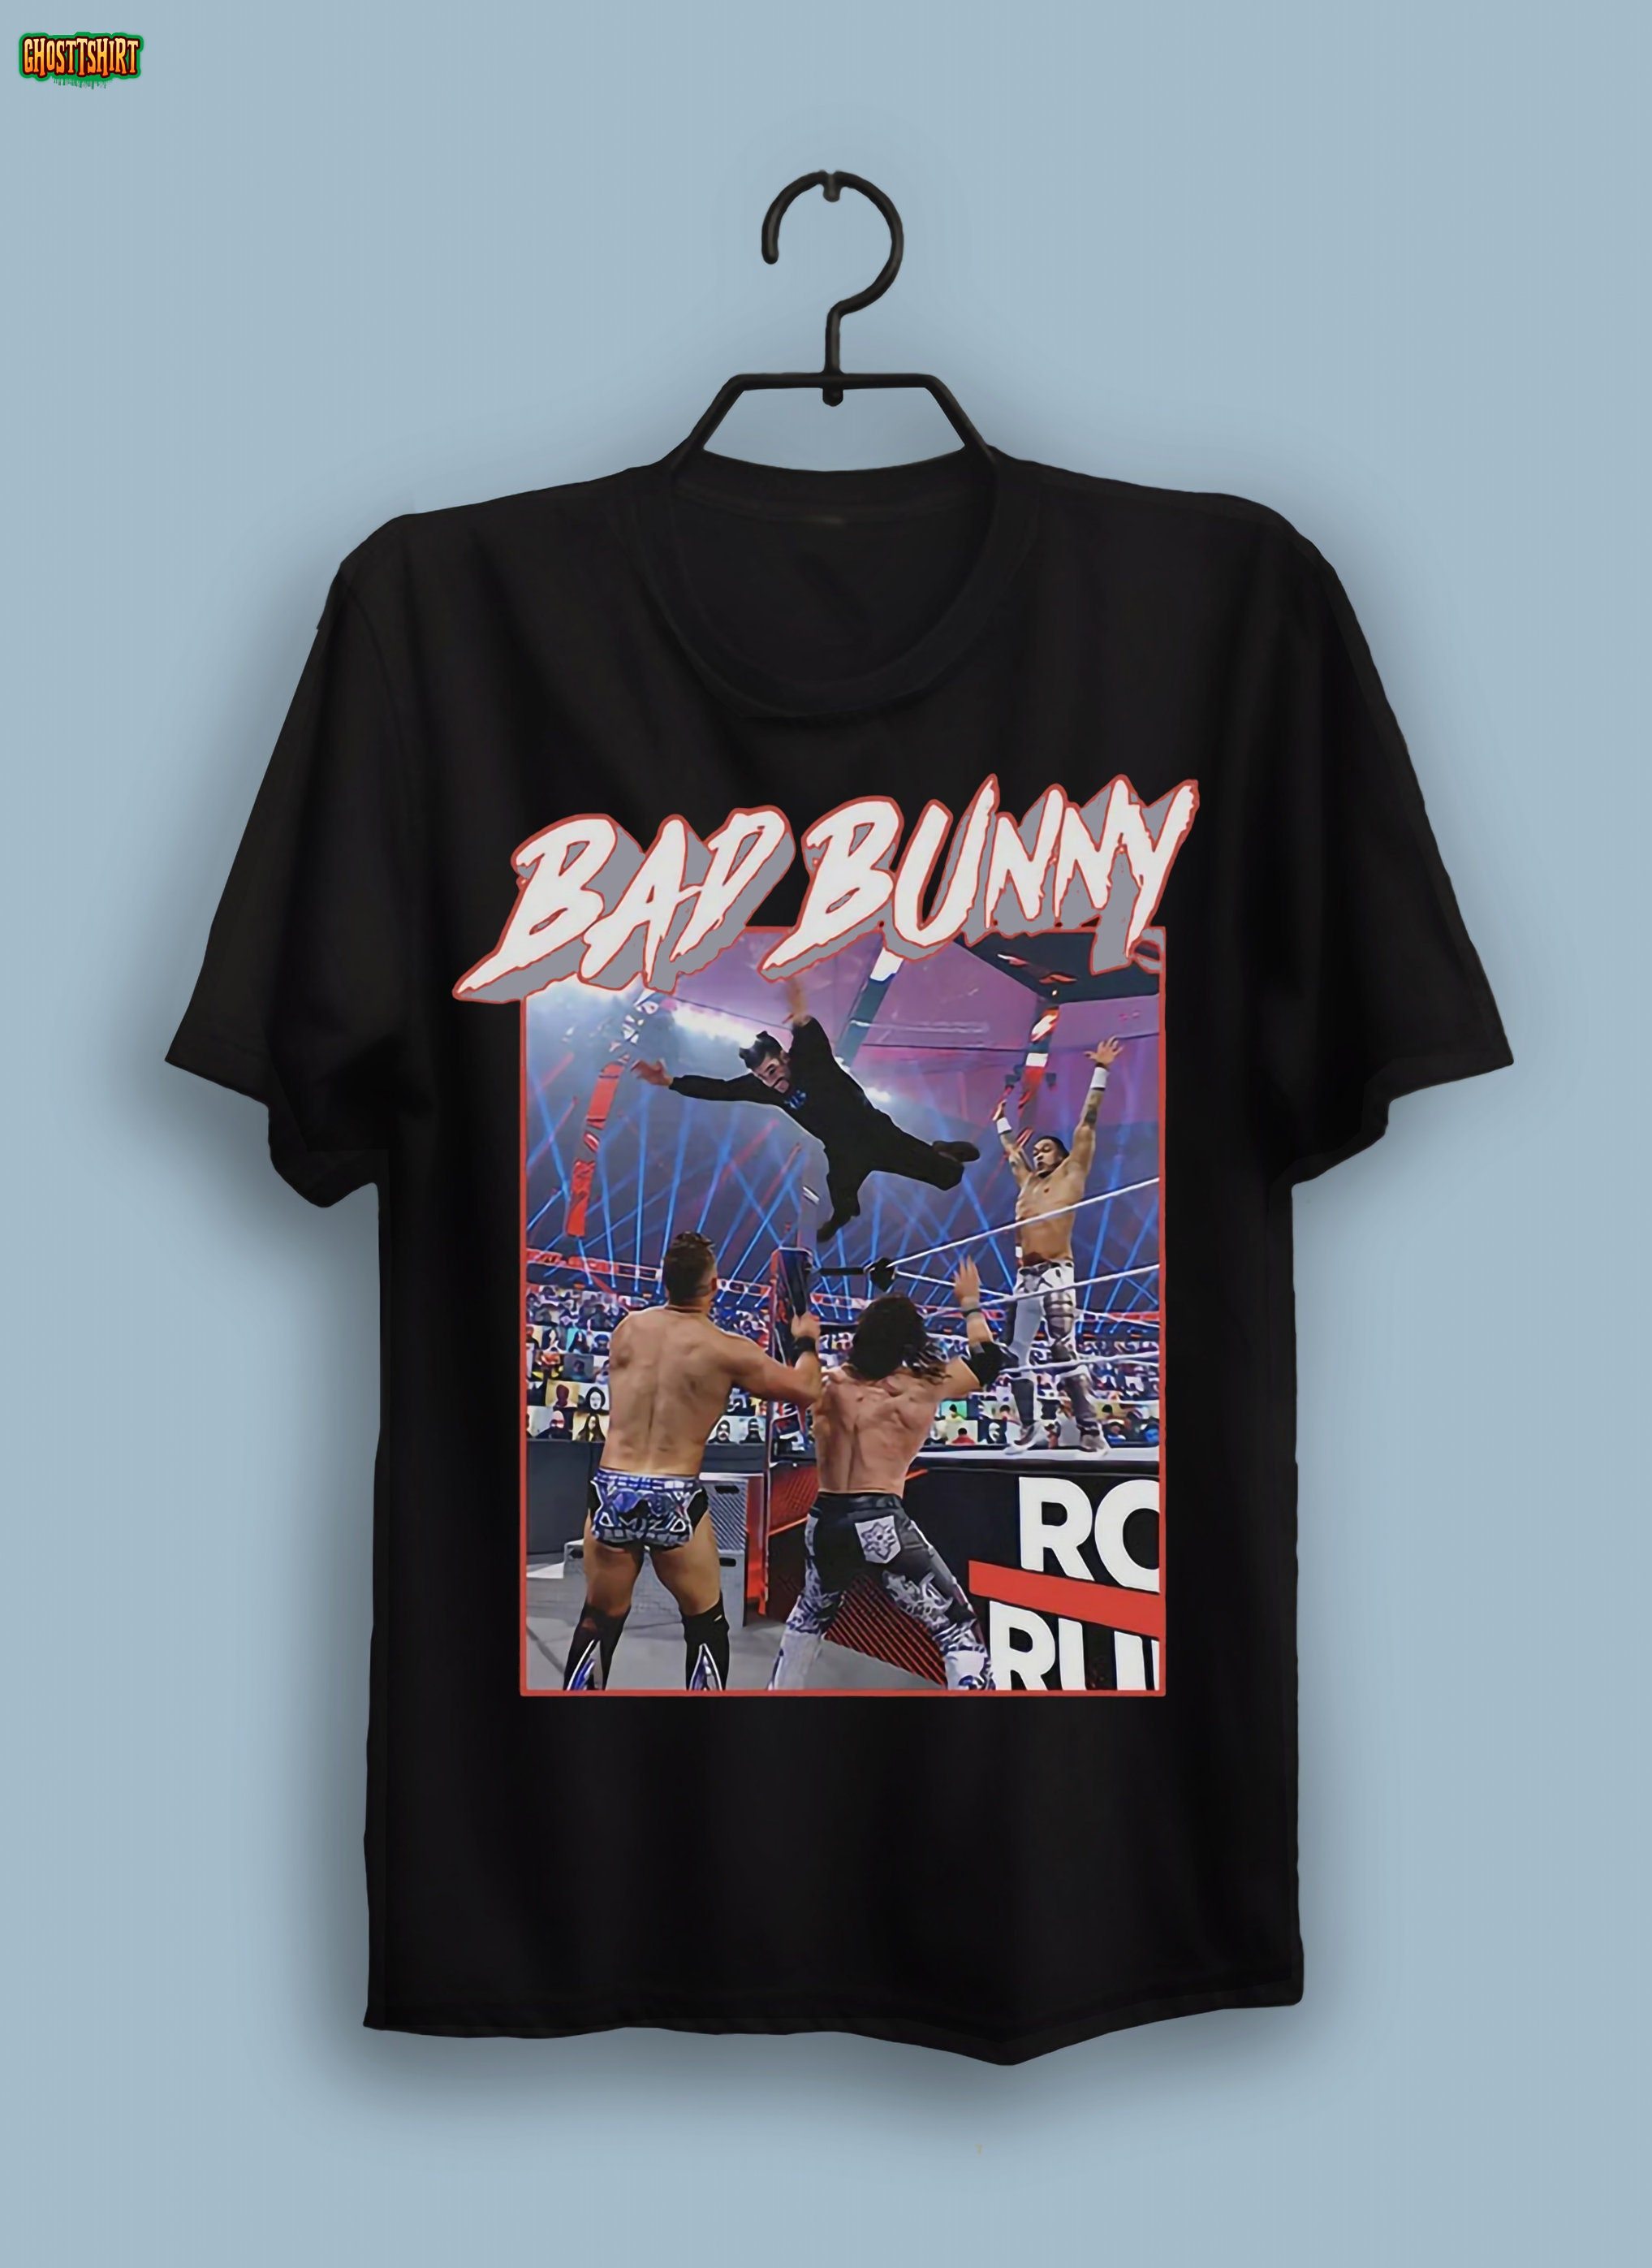 Bad Bunny Unisex T-Shirt Gift for Men Women